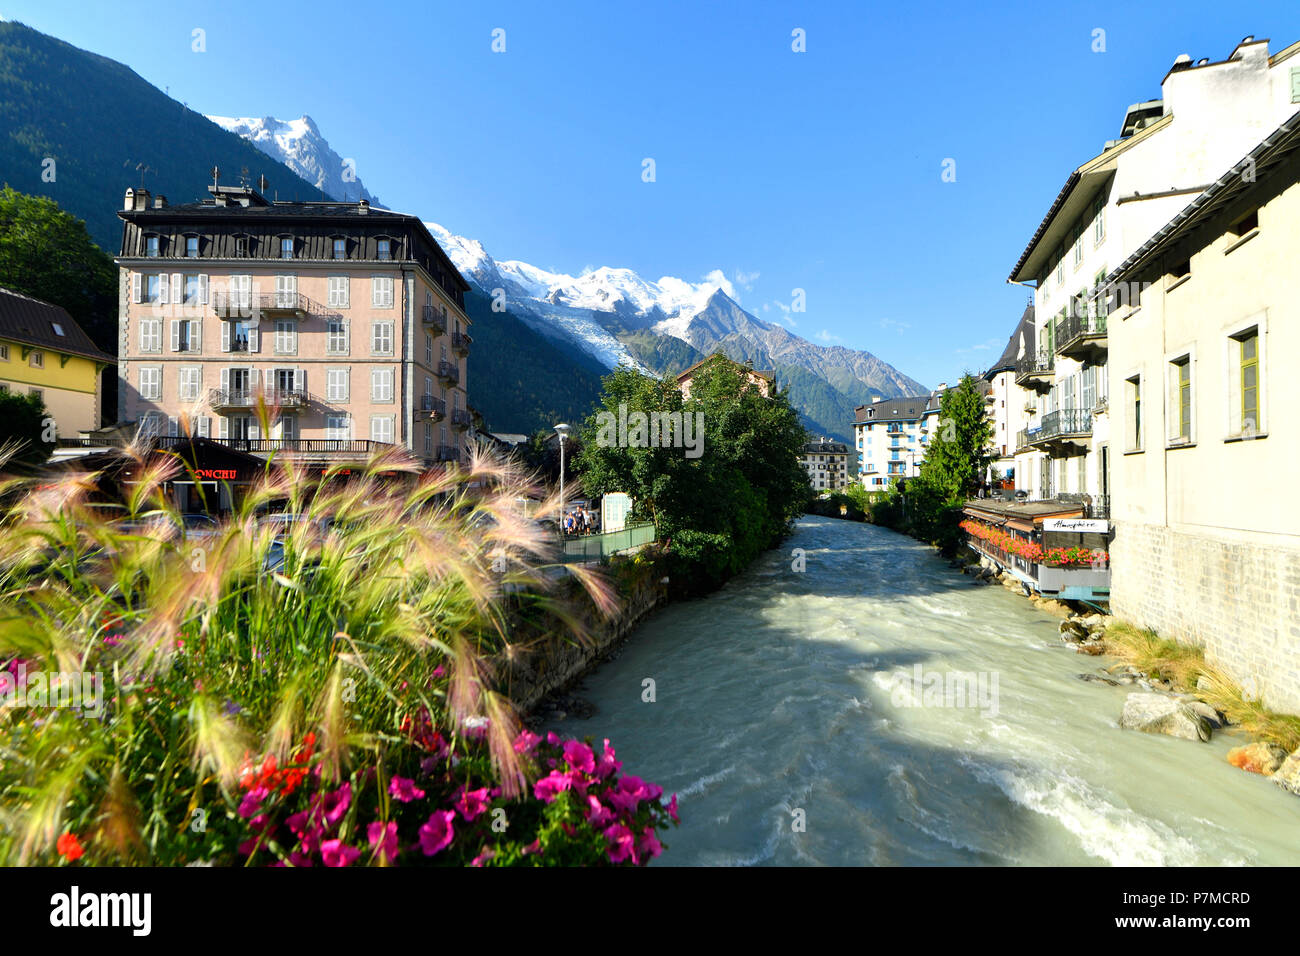 Francia, Alta Saboya, Chamonix ciudad atravesada por el río Arve y el Mont Blanc (4810m) Foto de stock